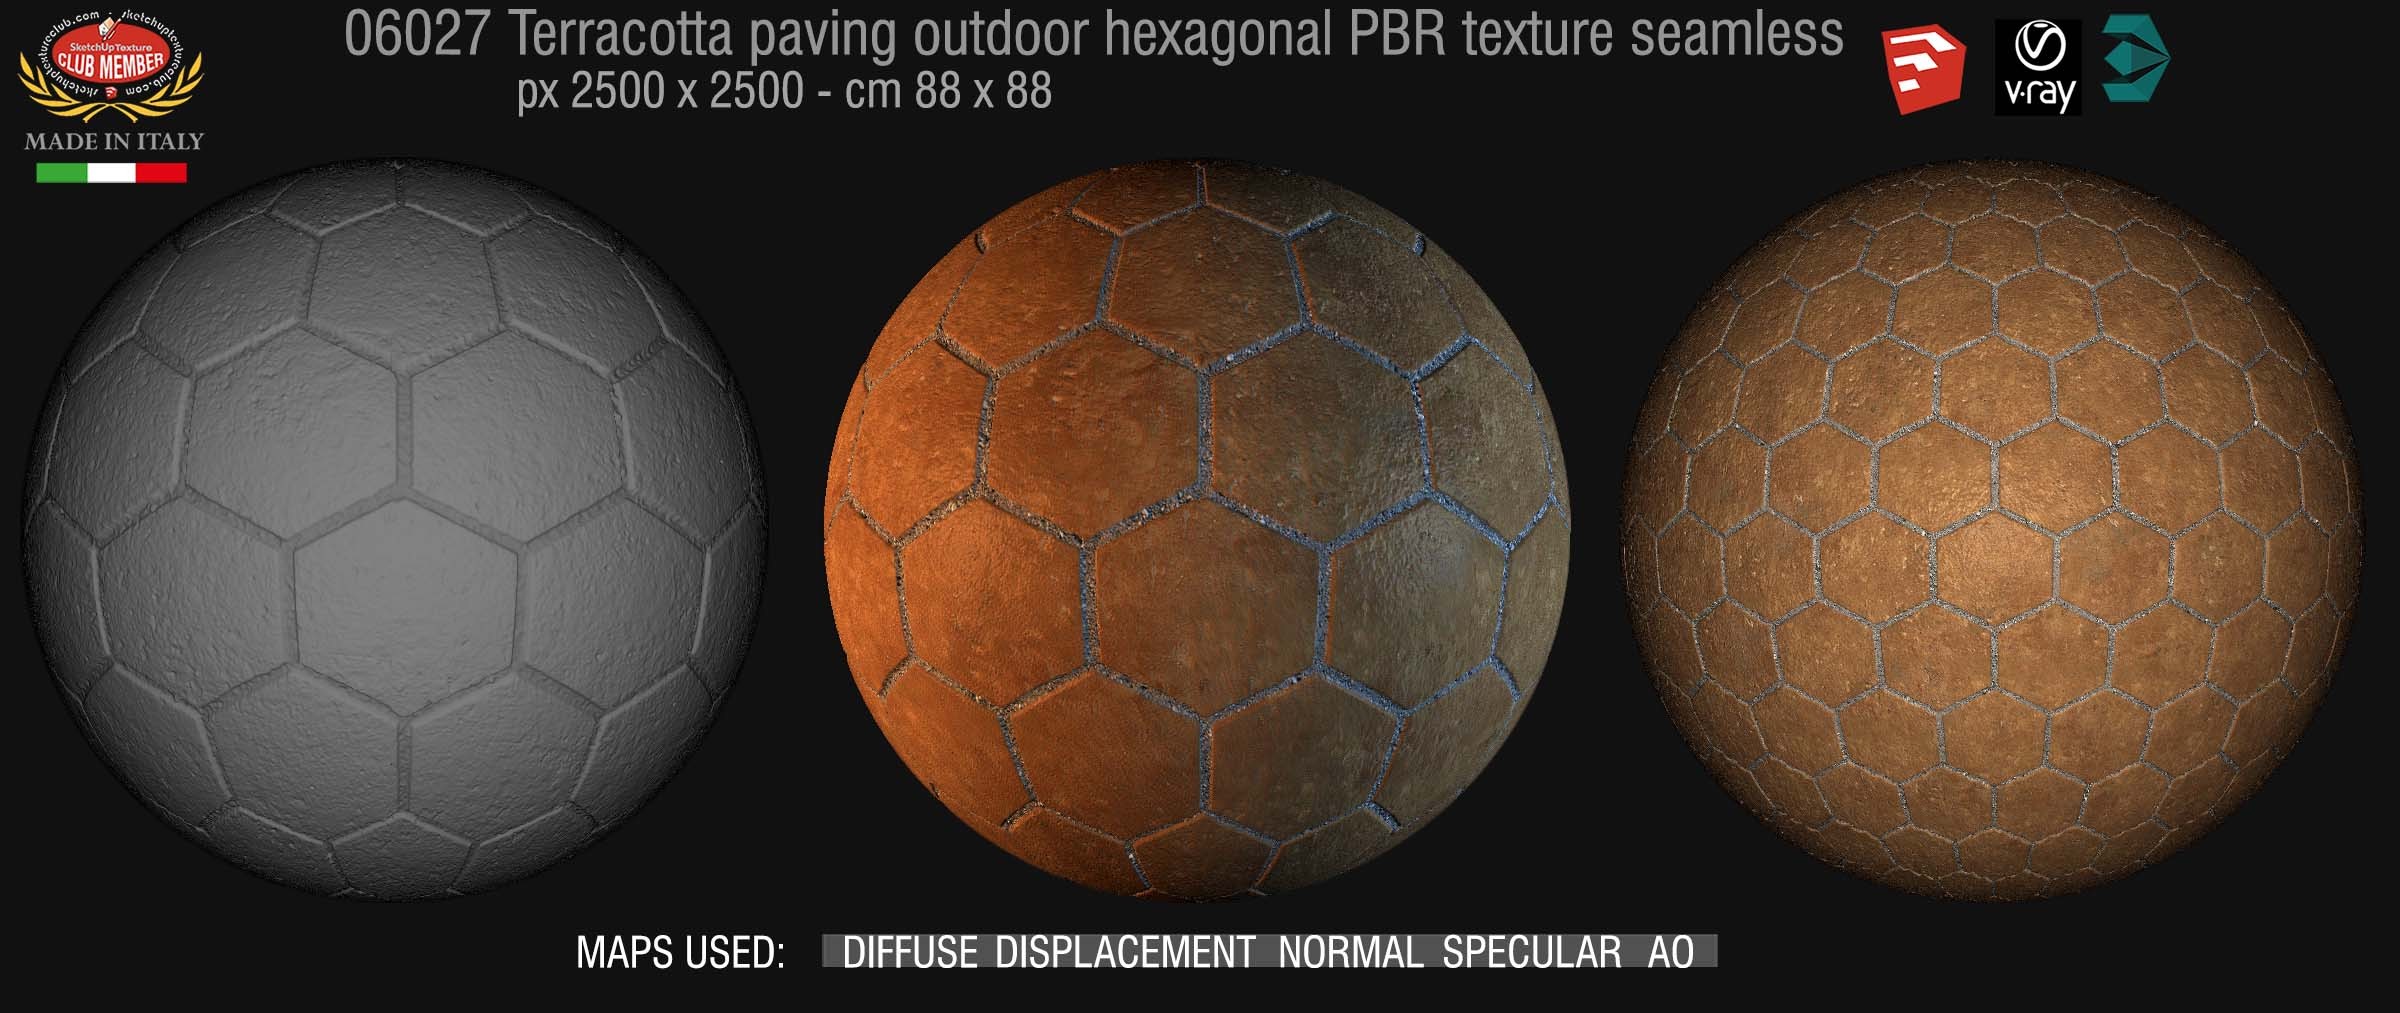 06027 Terracotta paving outdoor hexagonal PBR texture seamless DEMO